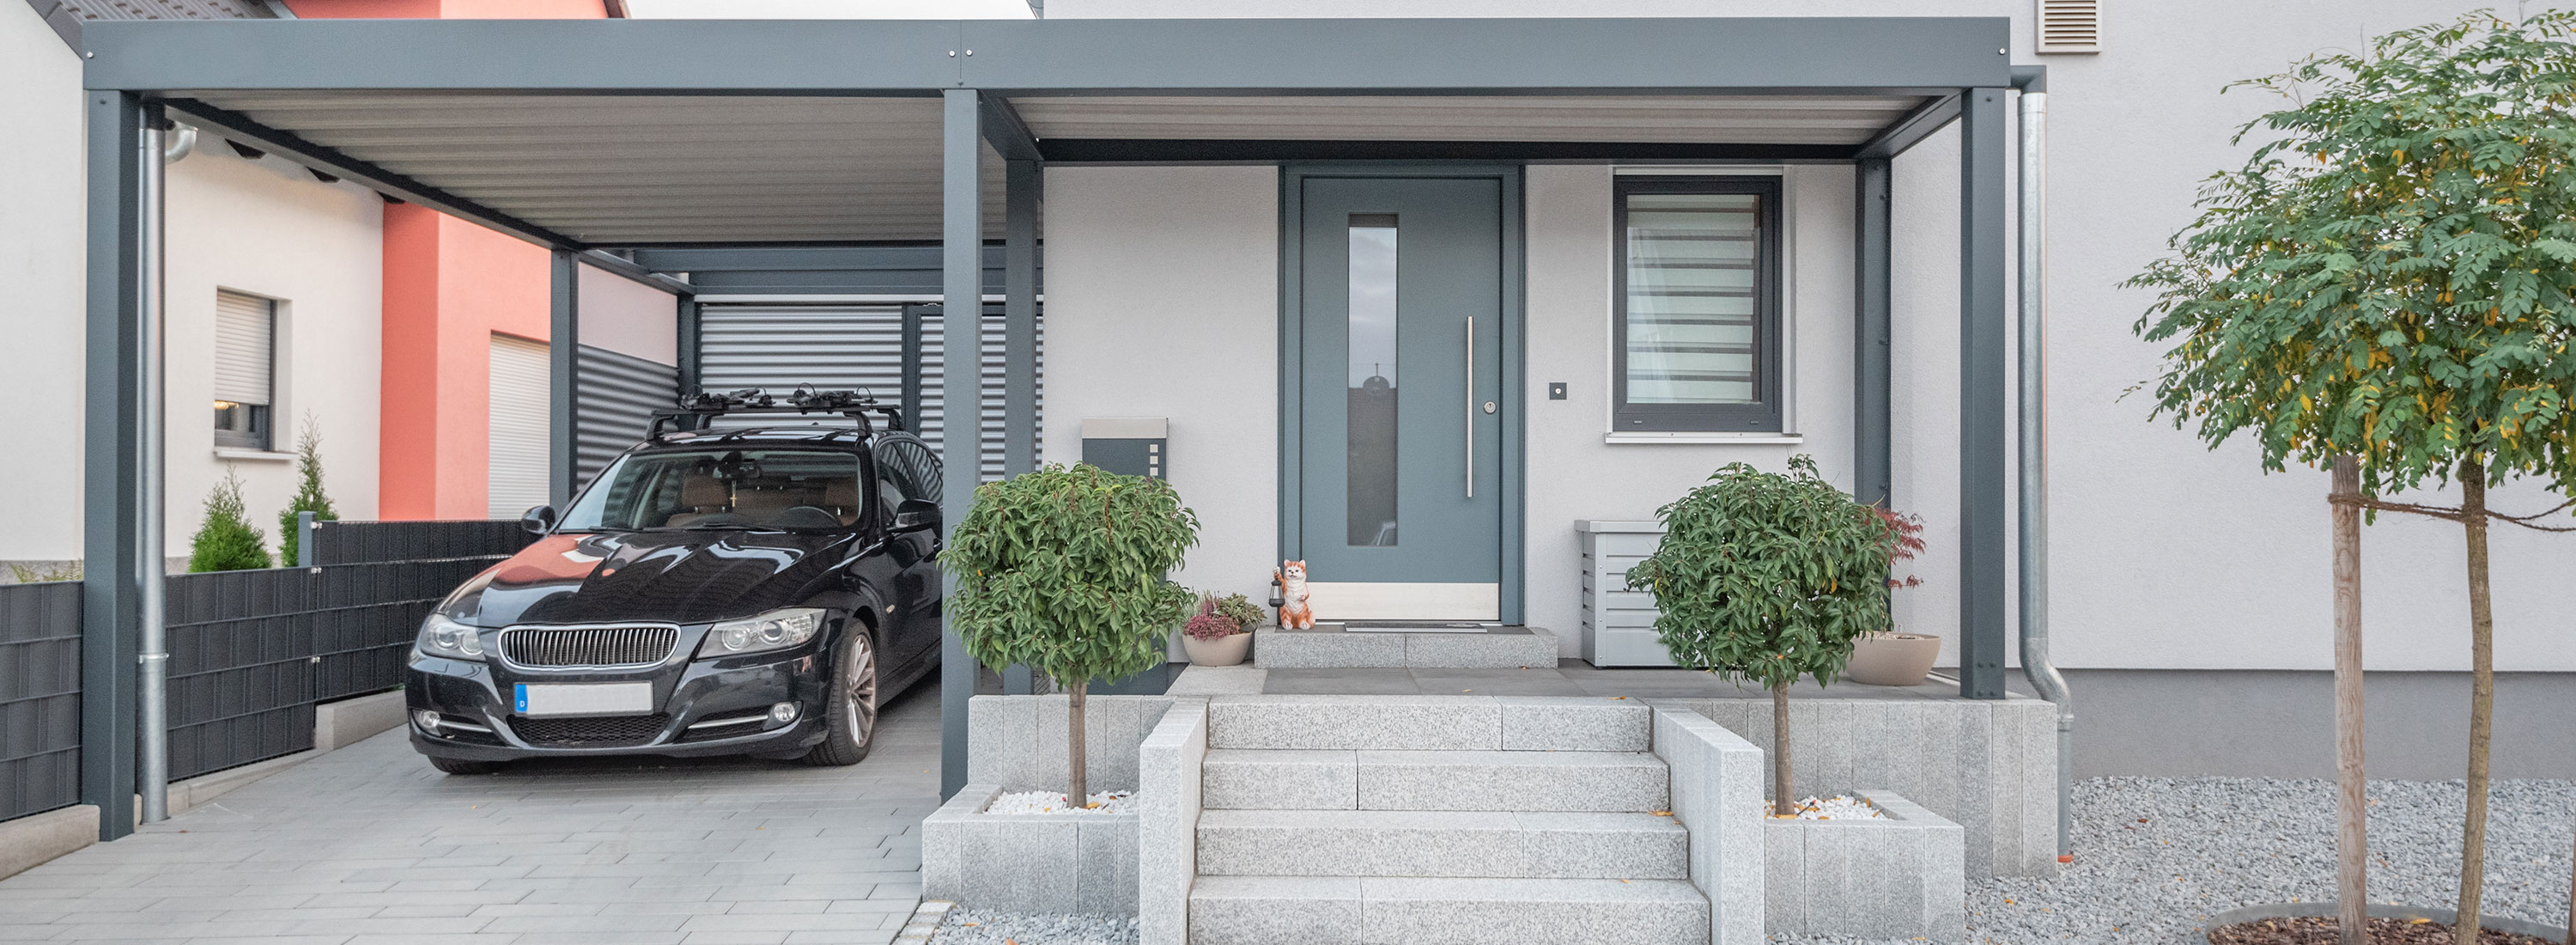 Haustür einbauen lassen in Wiesbaden Haustürfirma